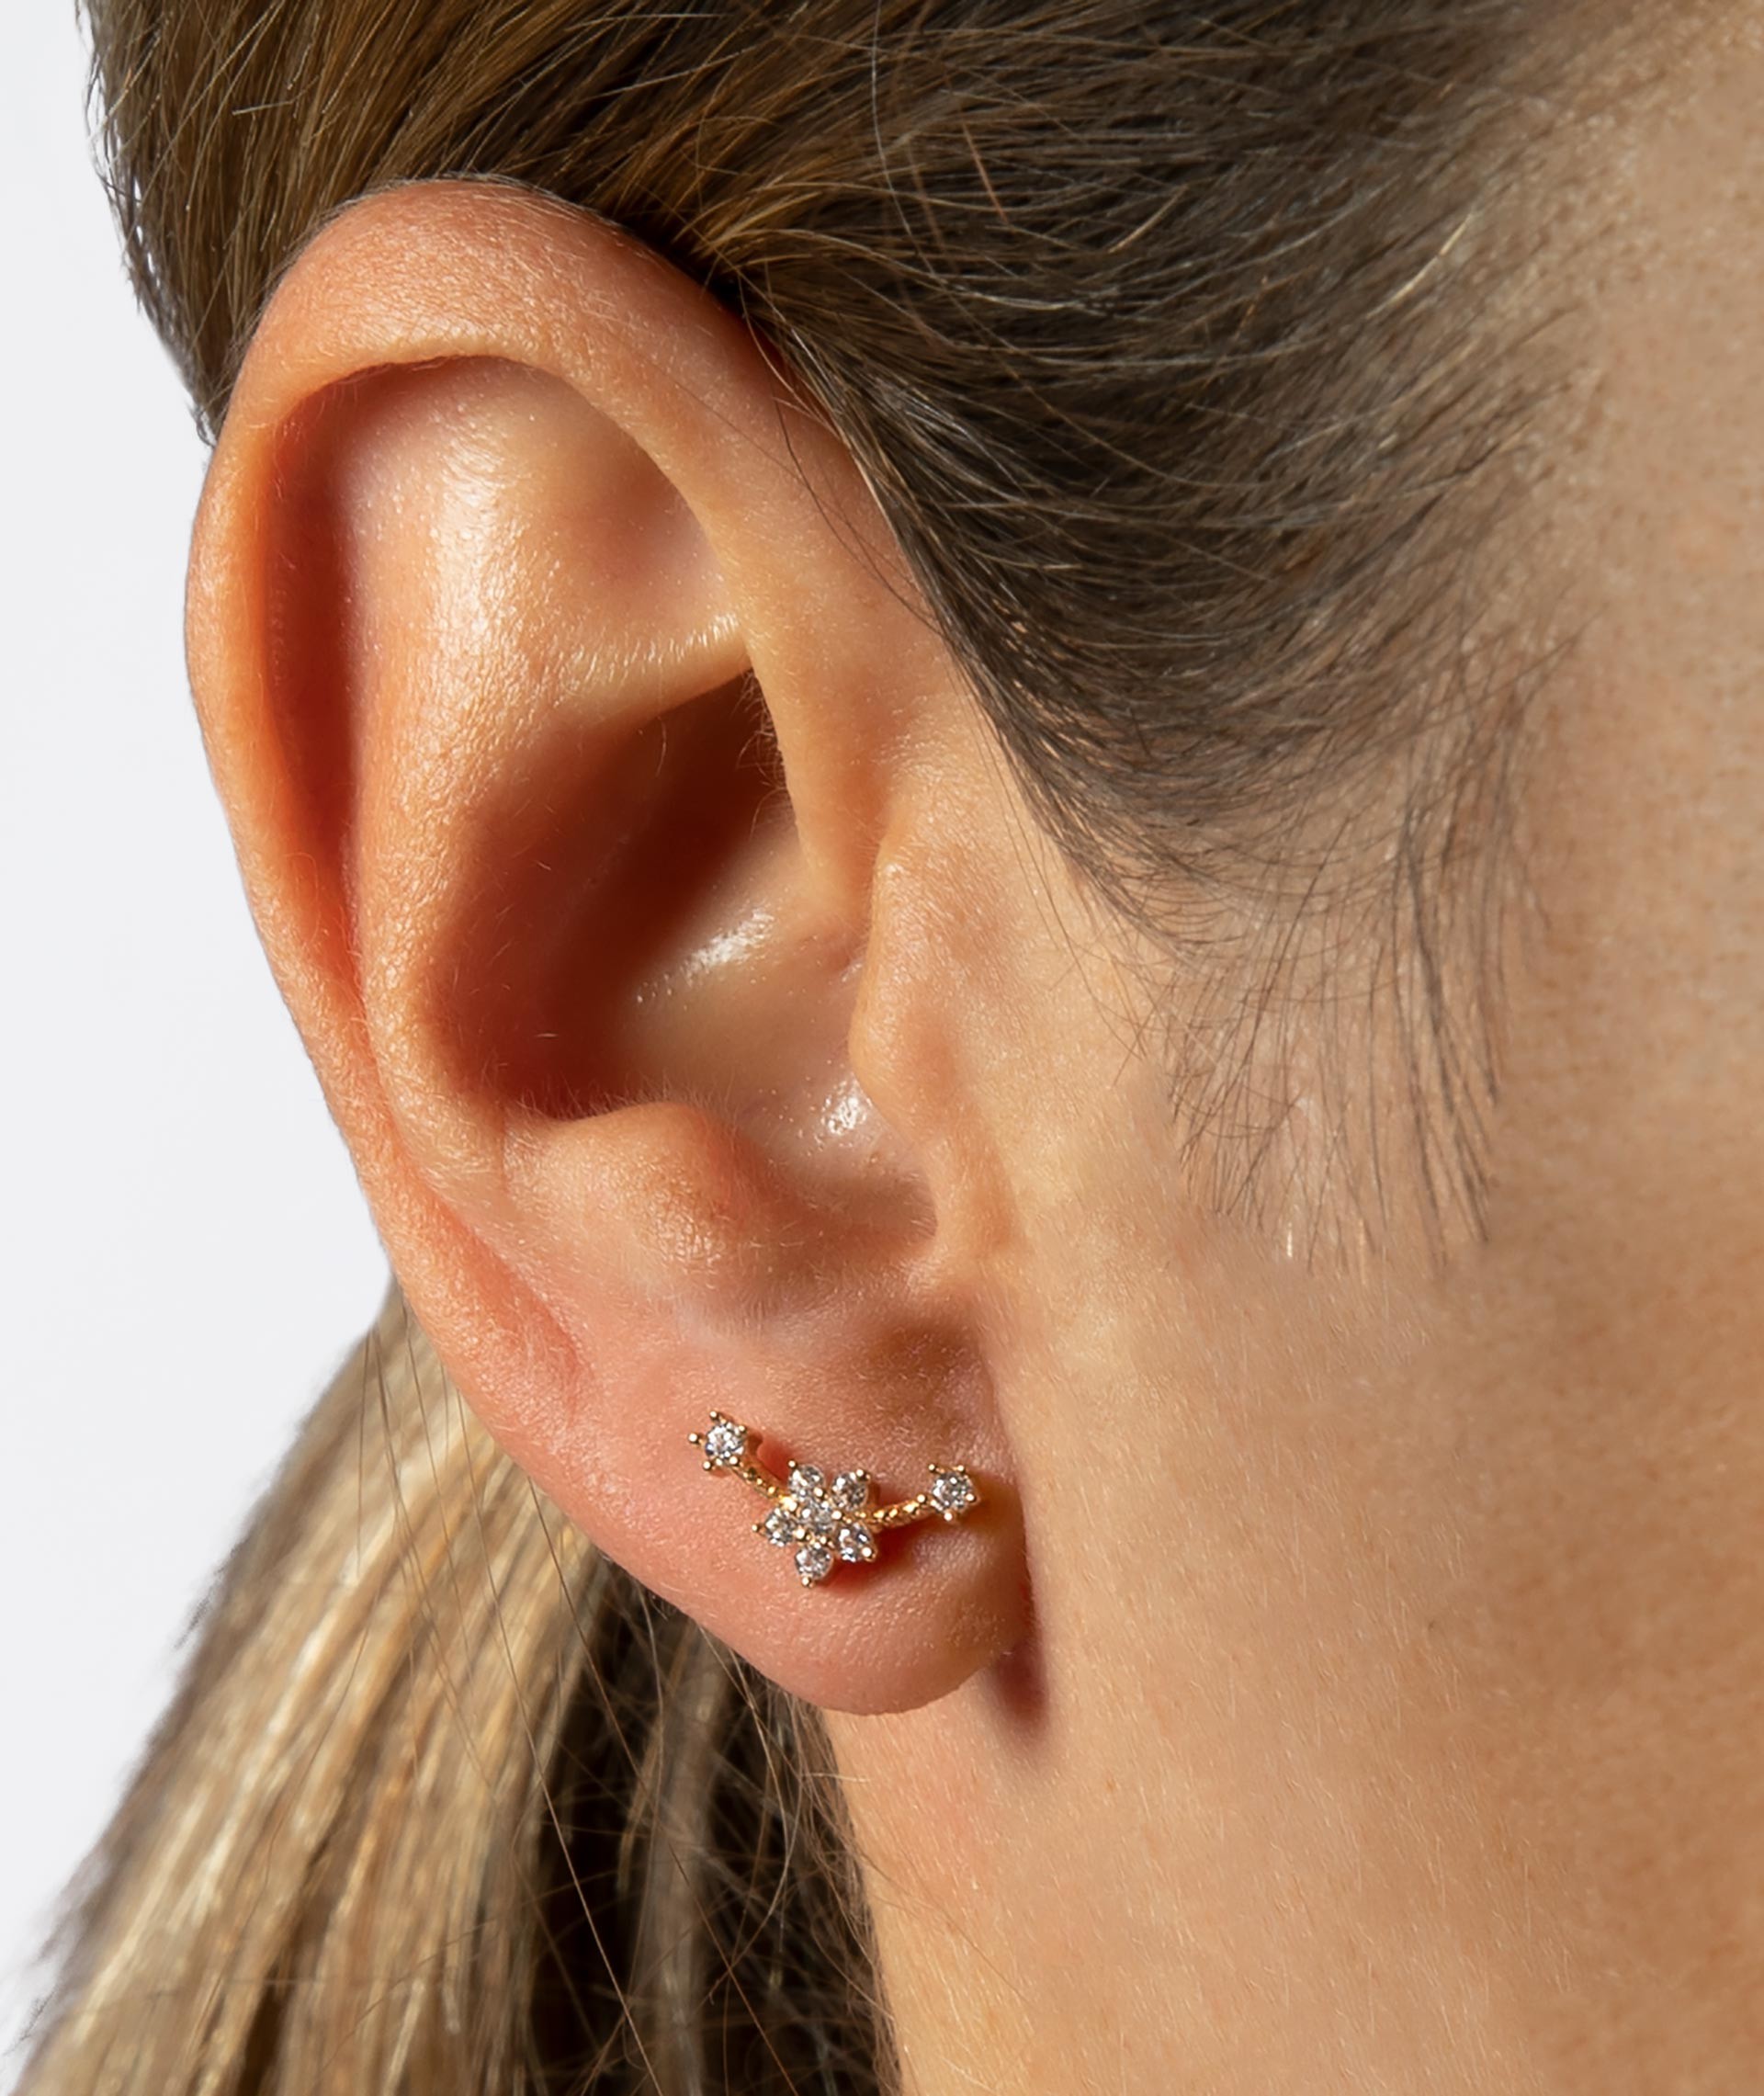 Individual Earring Zirconia